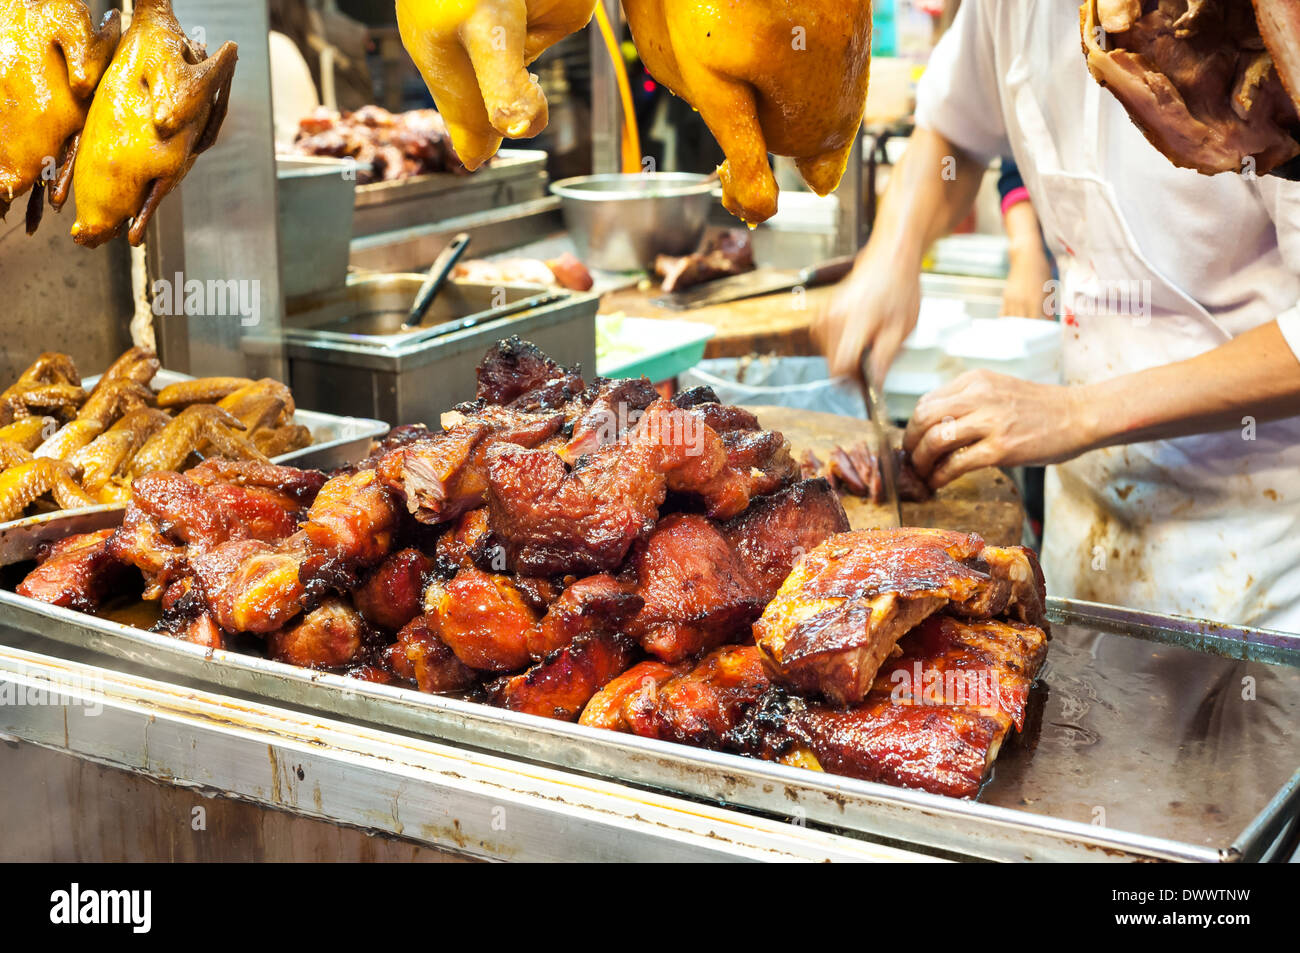 Parilla corte carnicero de cerdo, también conocido como cha siu, en un puesto de carne de Hong Kong Foto de stock